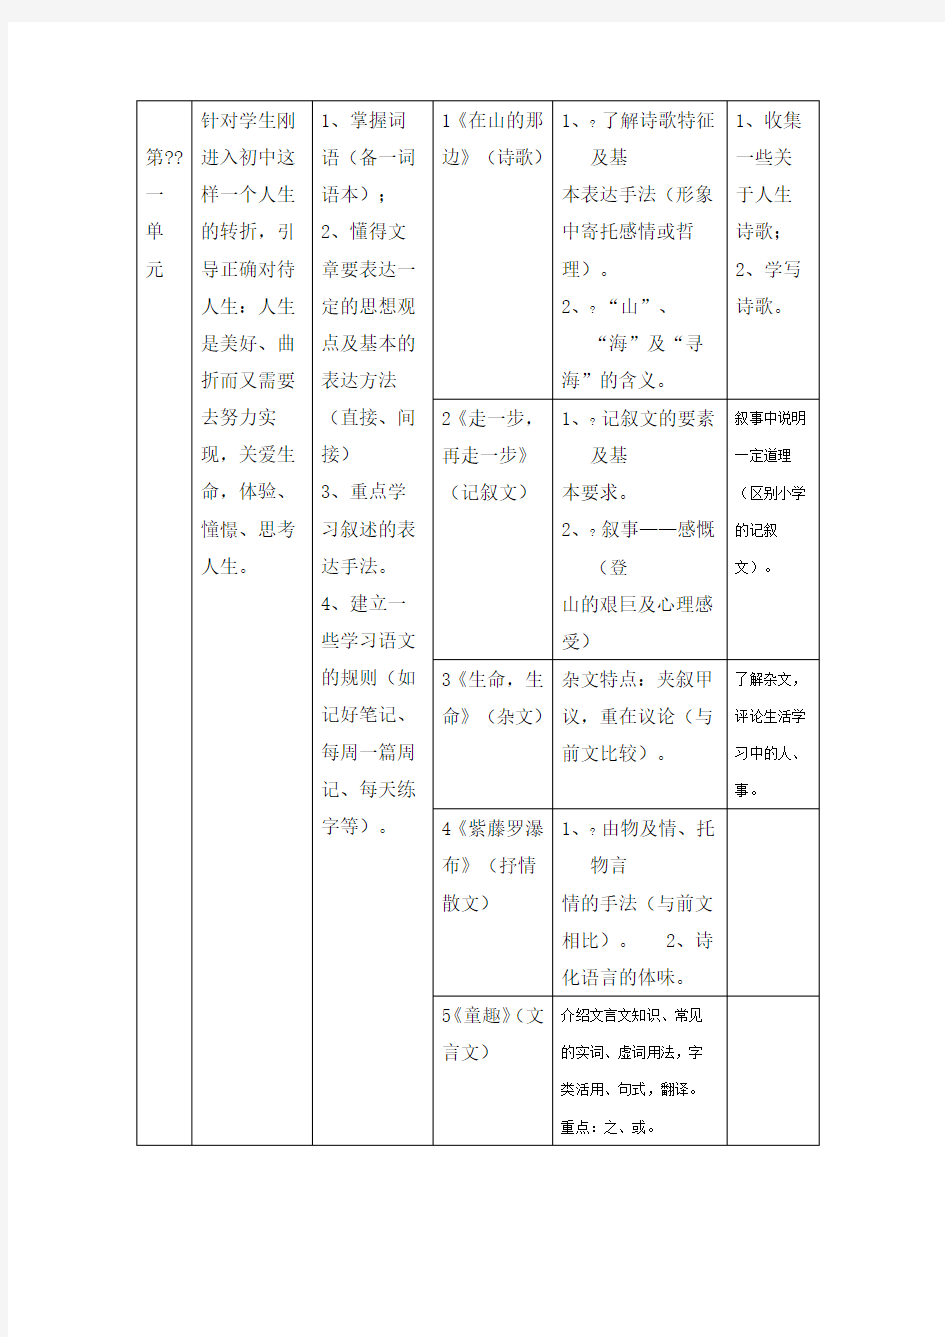 人教版初中语文七年级上册教材分析